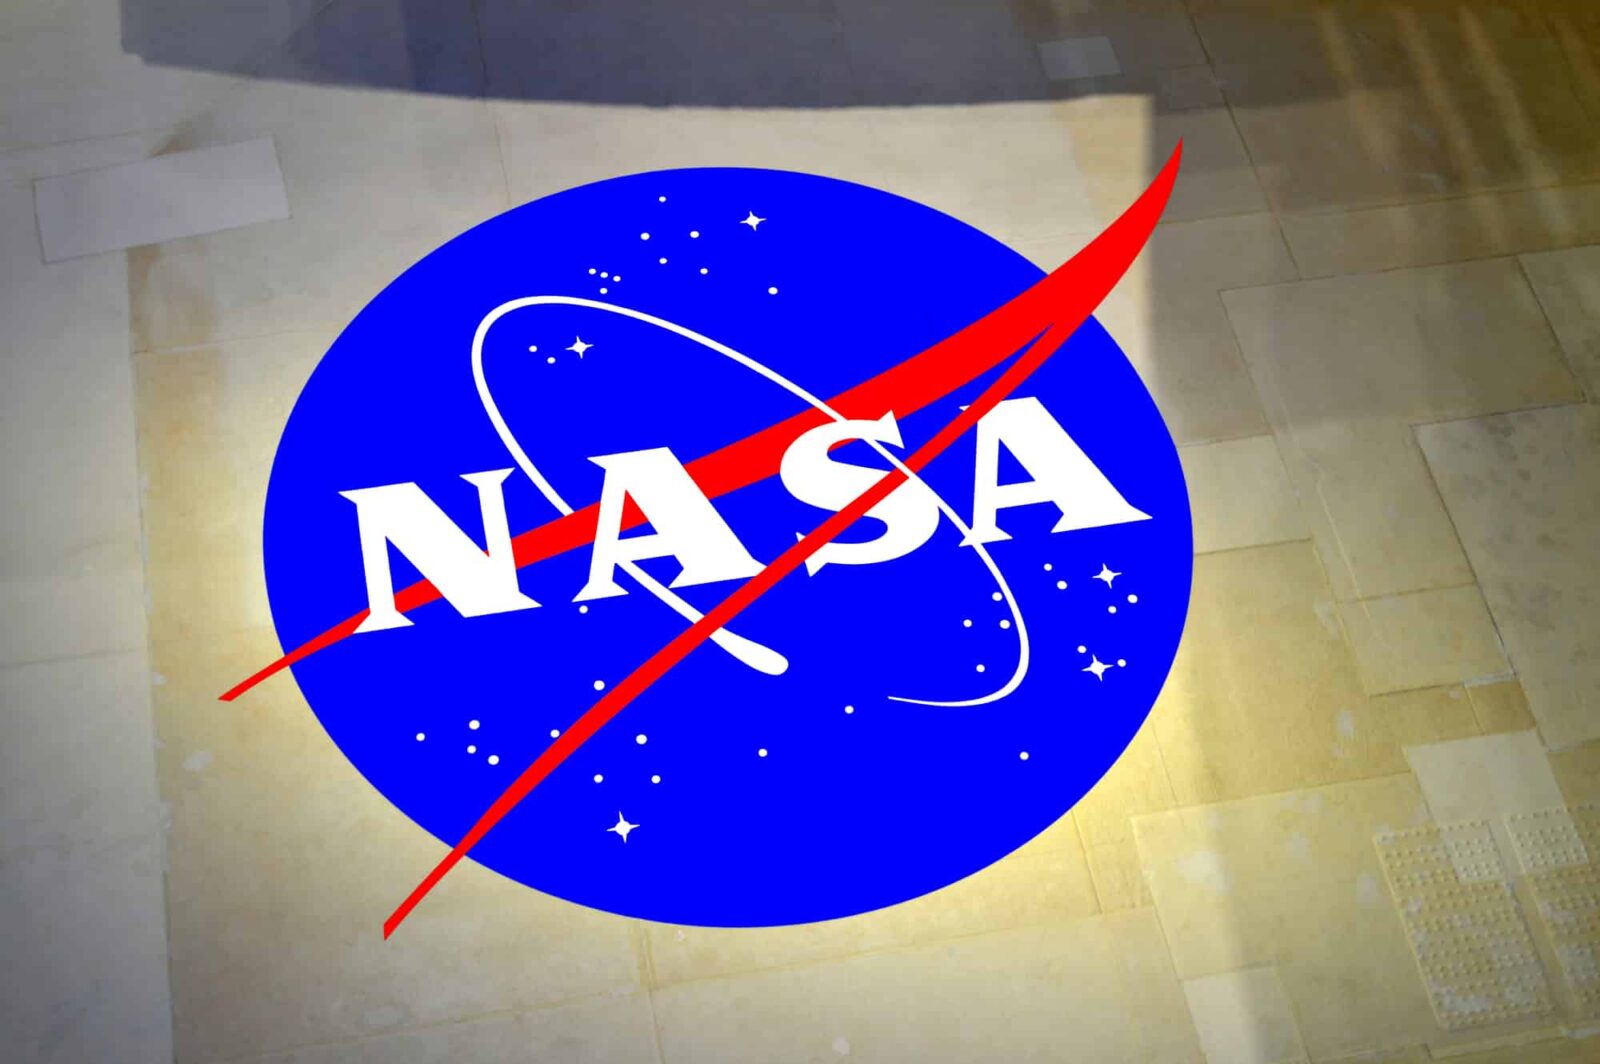 La NASA ha diffuso le prime immagini catturate dal telescopio James Webb thumbnail